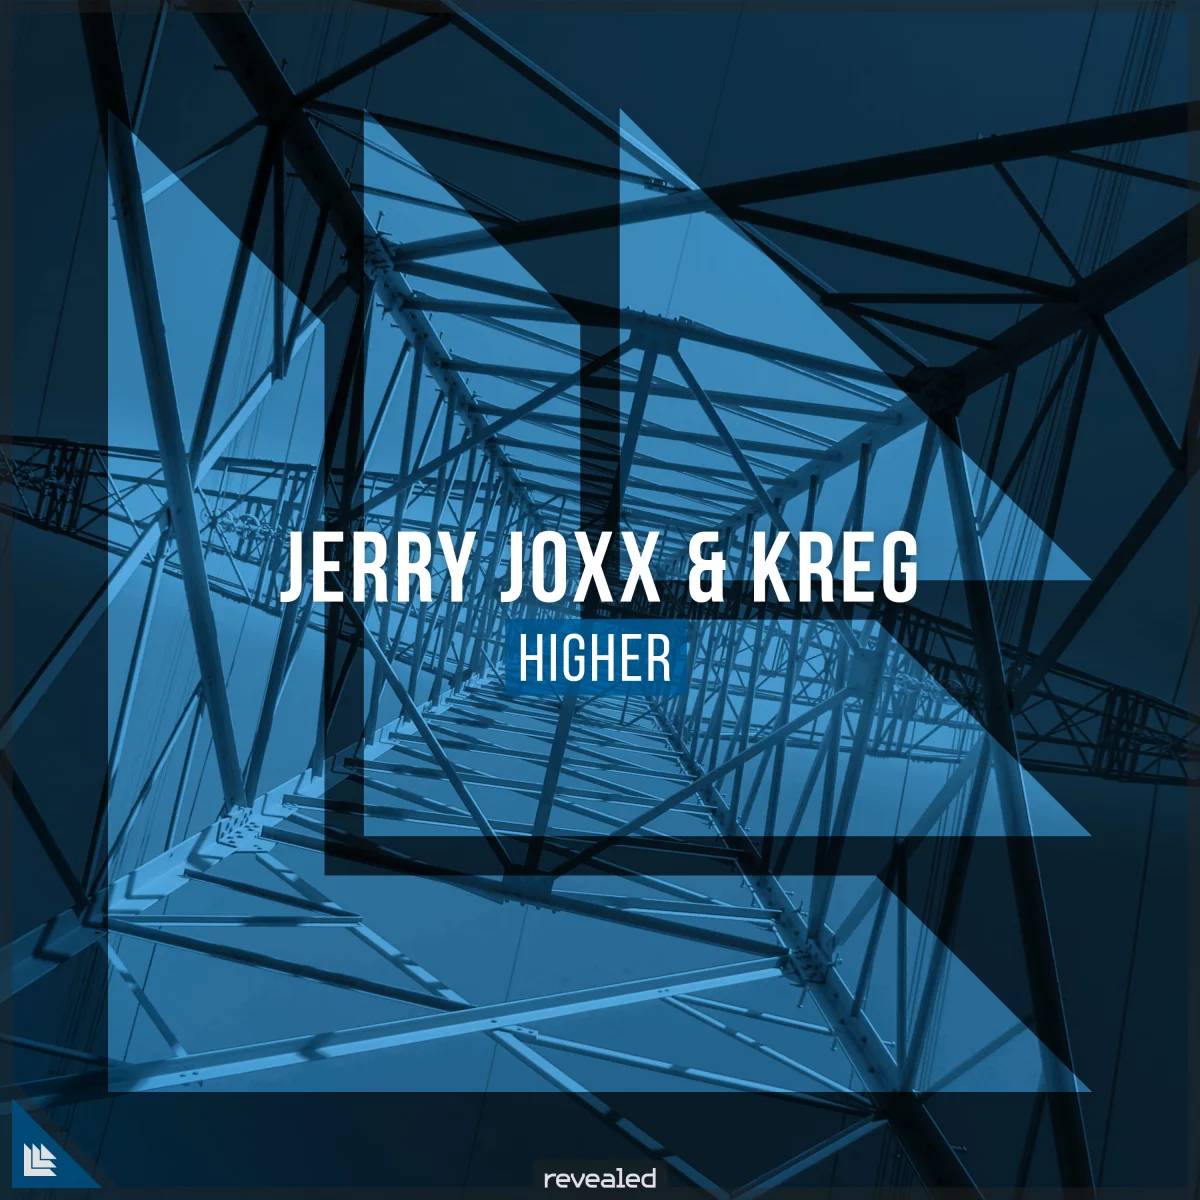 Higher - Jerry Joxx⁠ KREG⁠ 